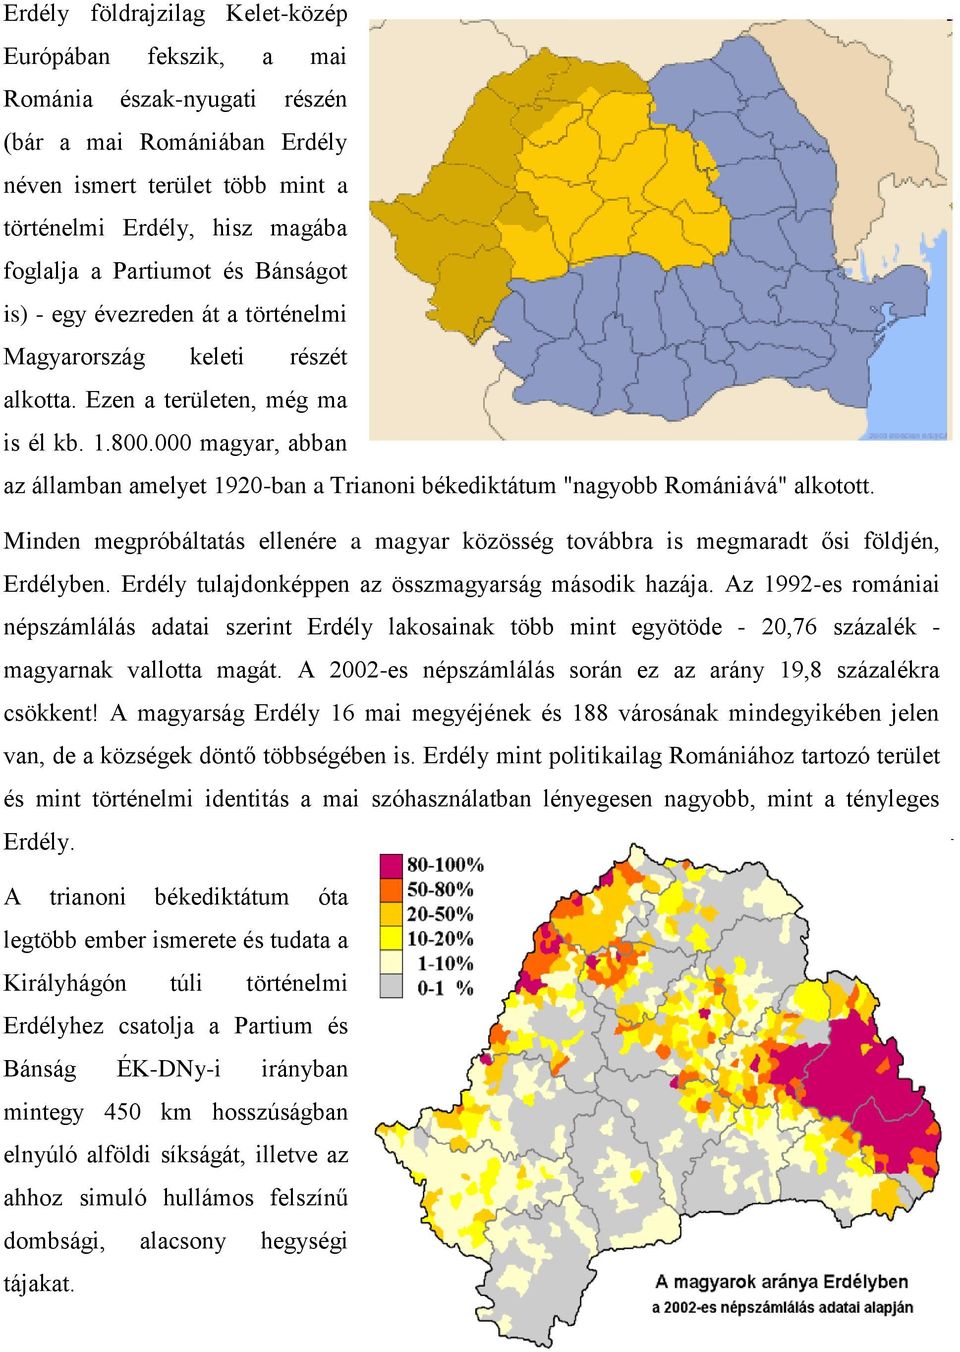 000 magyar, abban az államban amelyet 1920-ban a Trianoni békediktátum "nagyobb Romániává" alkotott. Minden megpróbáltatás ellenére a magyar közösség továbbra is megmaradt ősi földjén, Erdélyben.